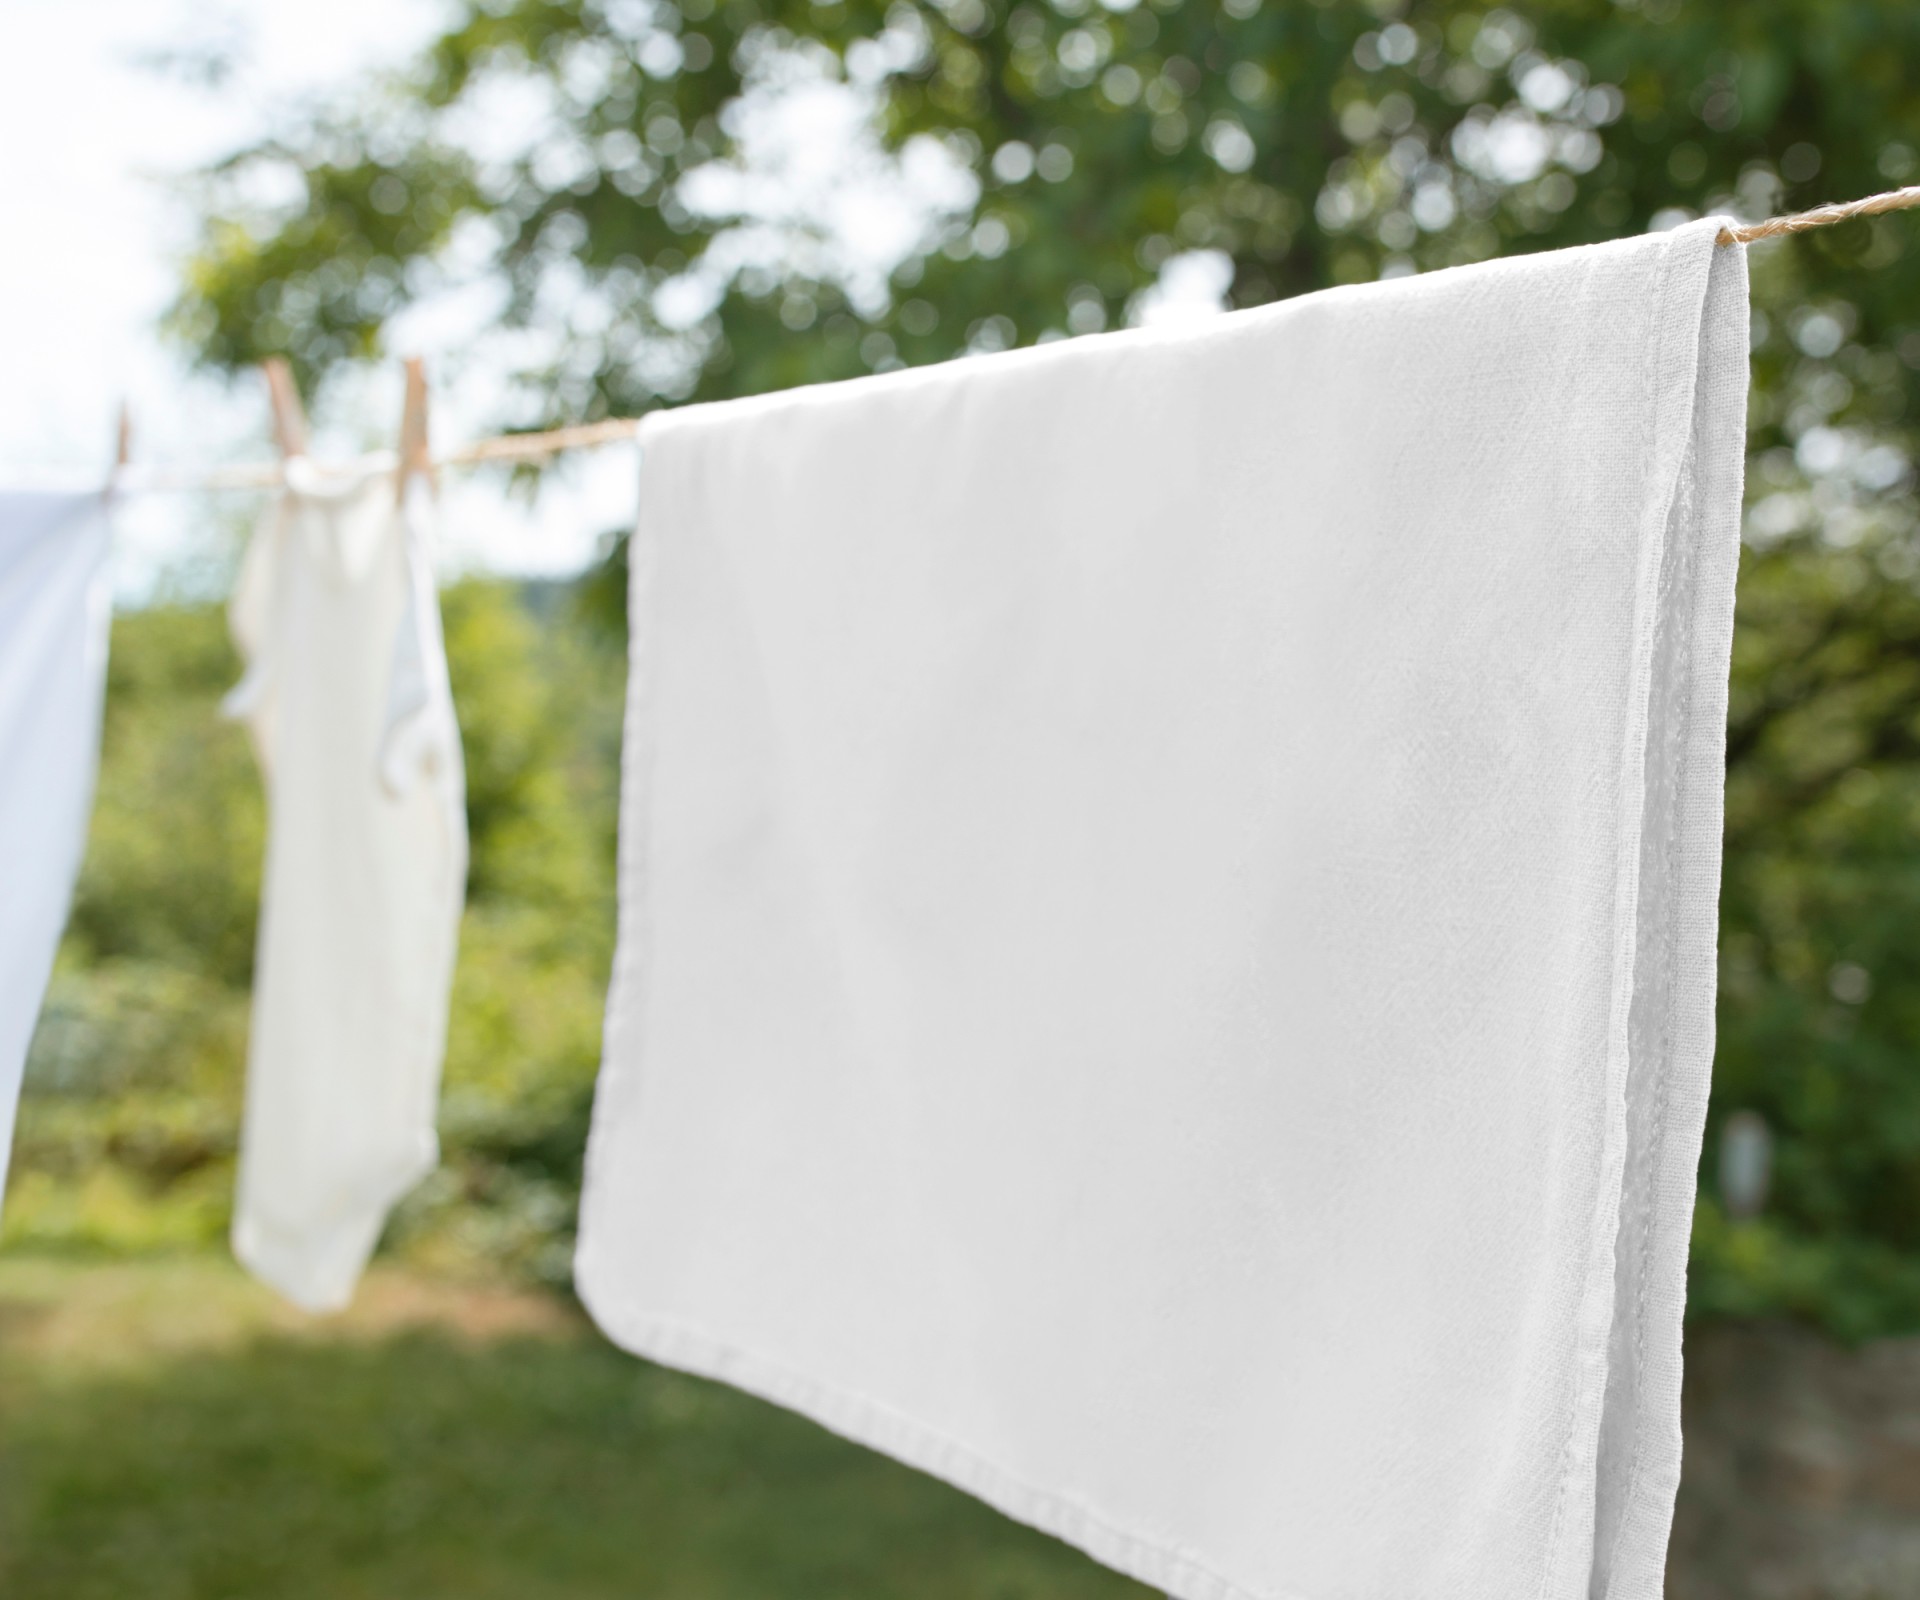 An einer Wäscheleine im Freien hängen Tücher und Kleidung